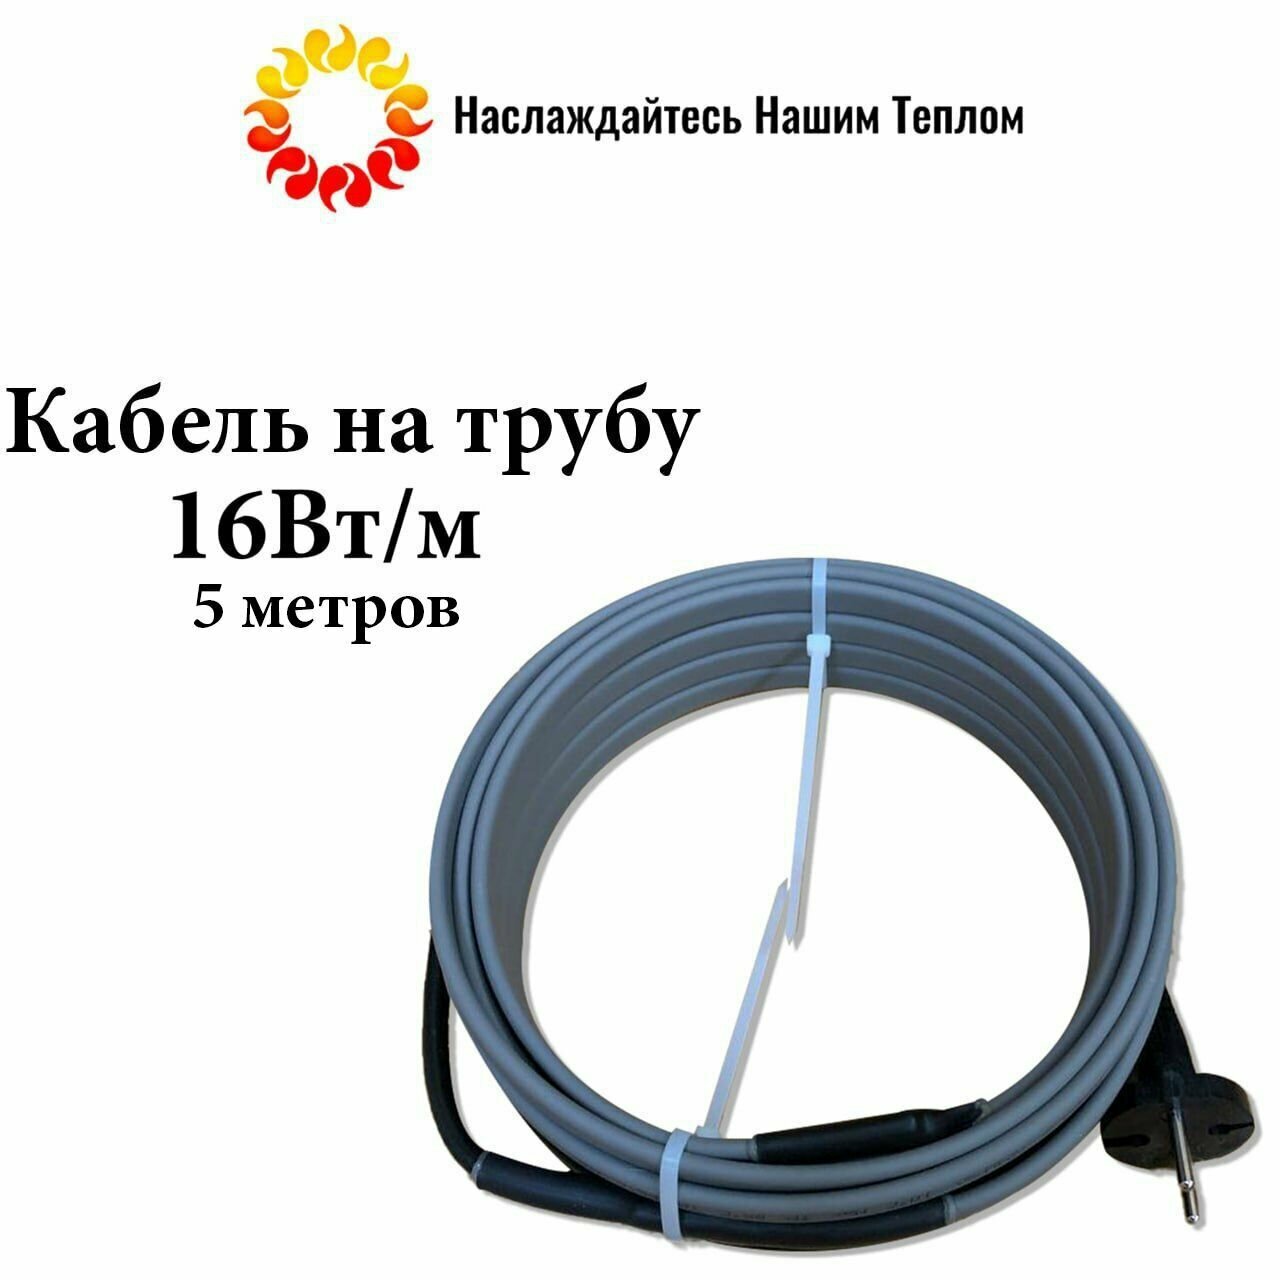 Саморегулирующийся греющий кабель на трубу (наружный) для водопровода и канализации 16 Вт/м длина 5 метров